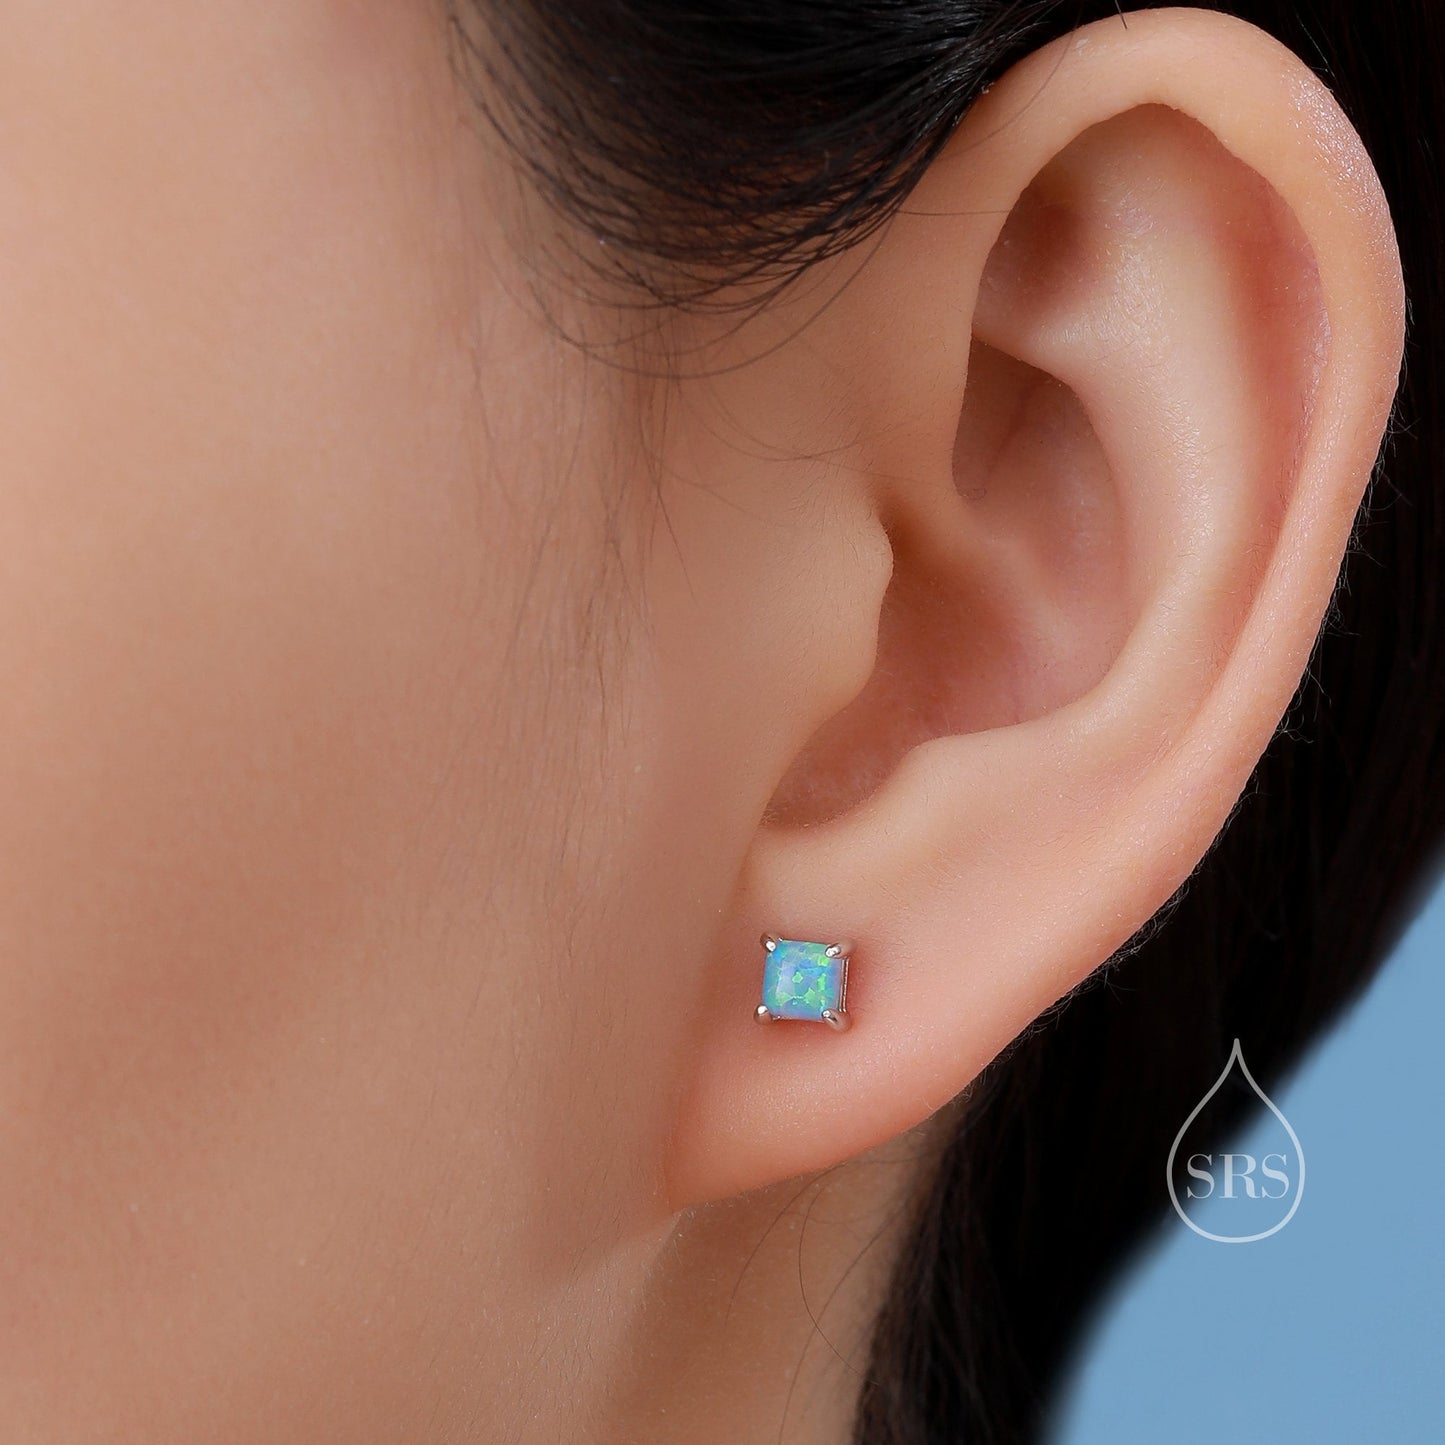 Blue Opal Square Stud Earrings in Sterling Silver - Gold or Silver - Opal Cube Earrings - Petite Stud Earrings, Blue Opal, Square Shape